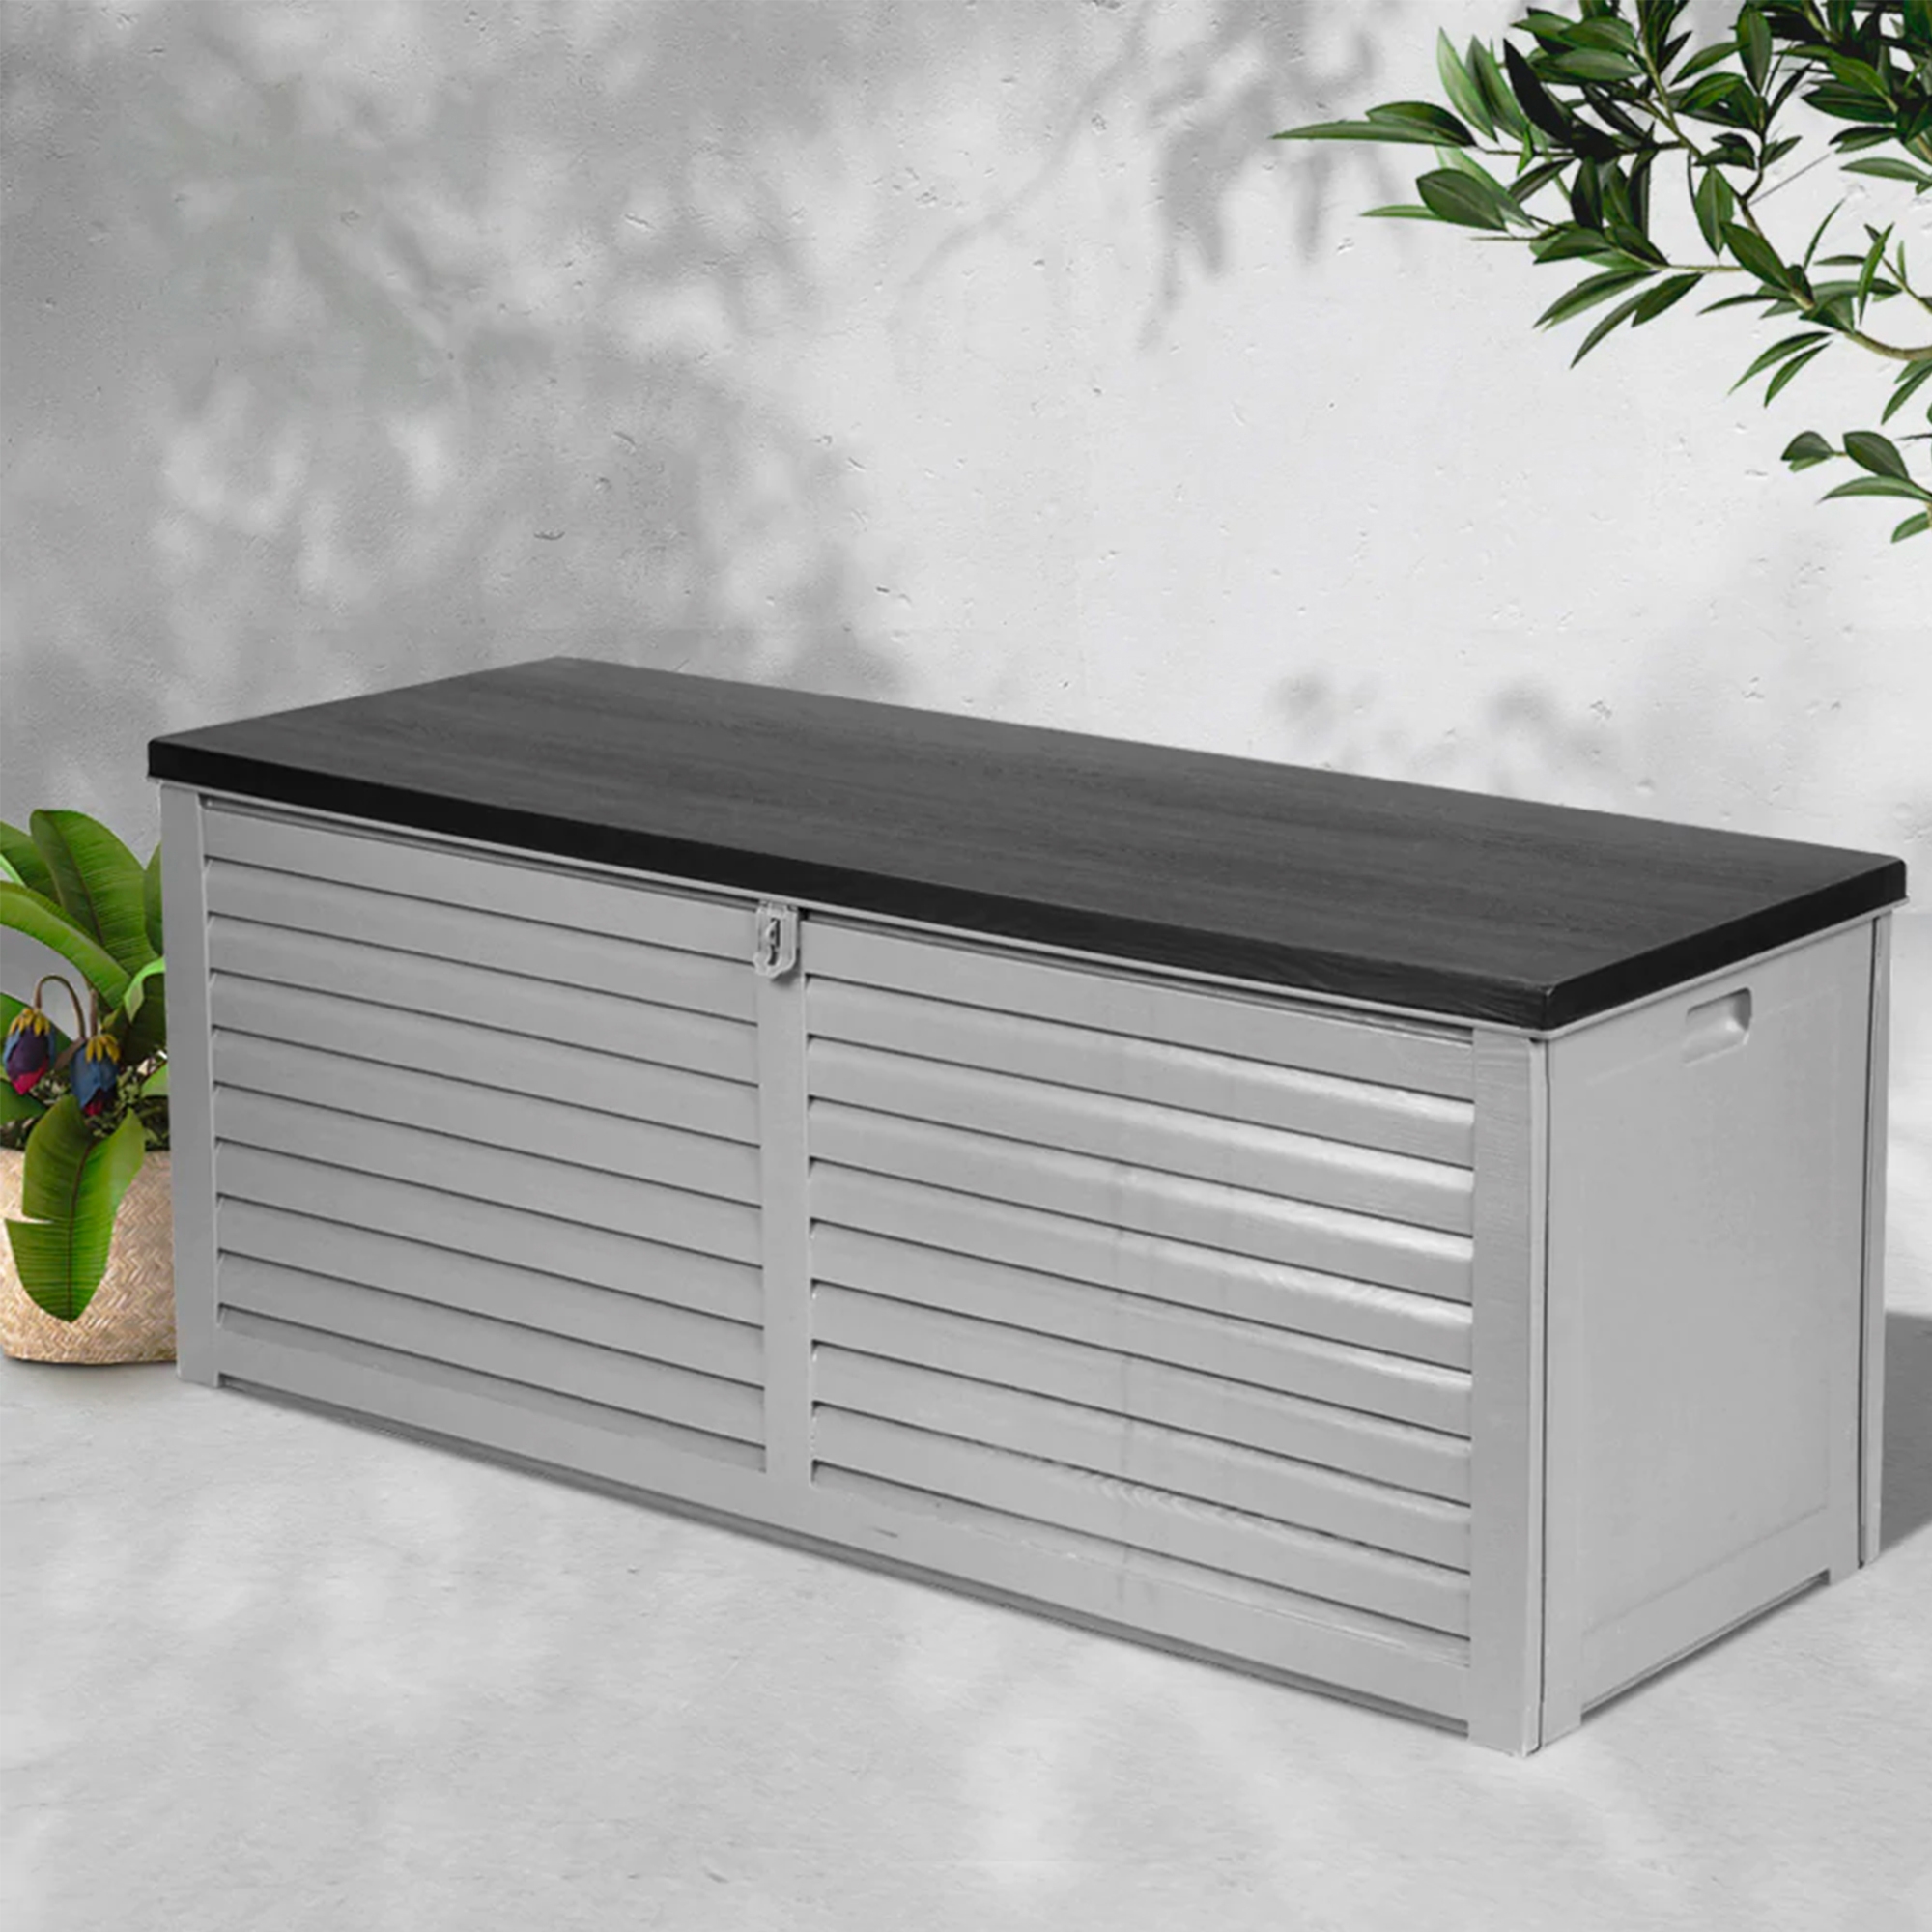 Gardeon Outdoor Storage Box 390L Dark Grey Image 2